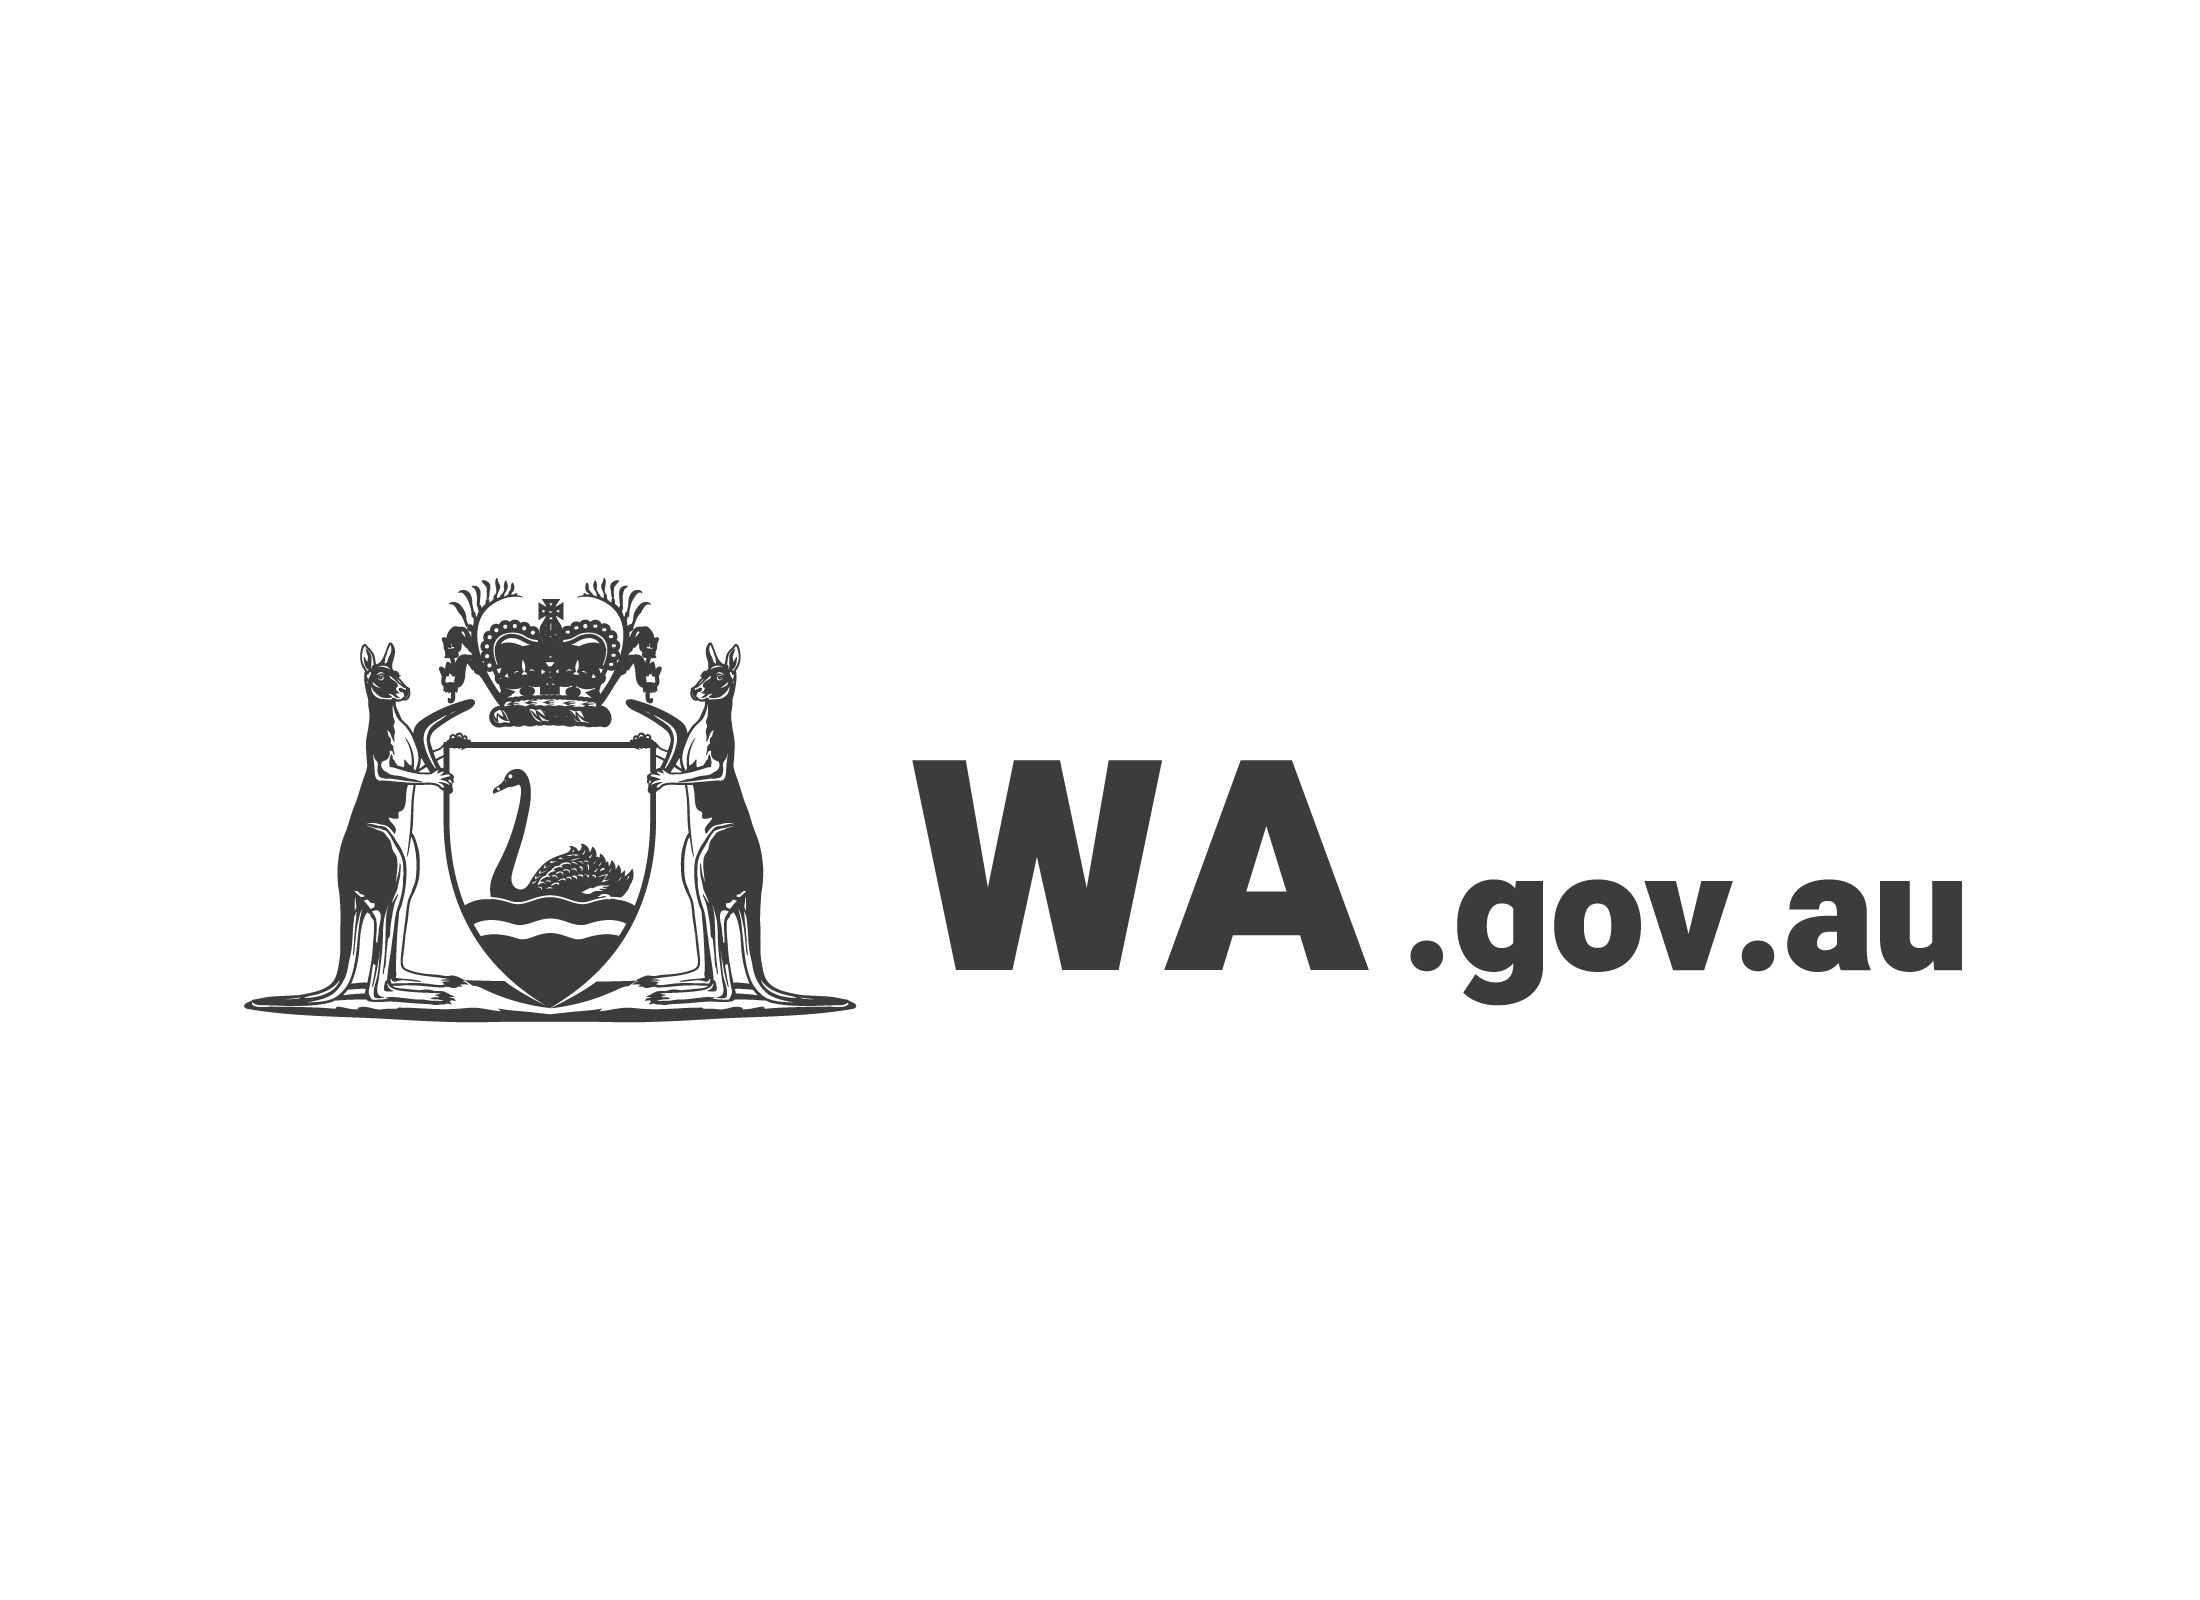 Siti web del governo del Western Australia